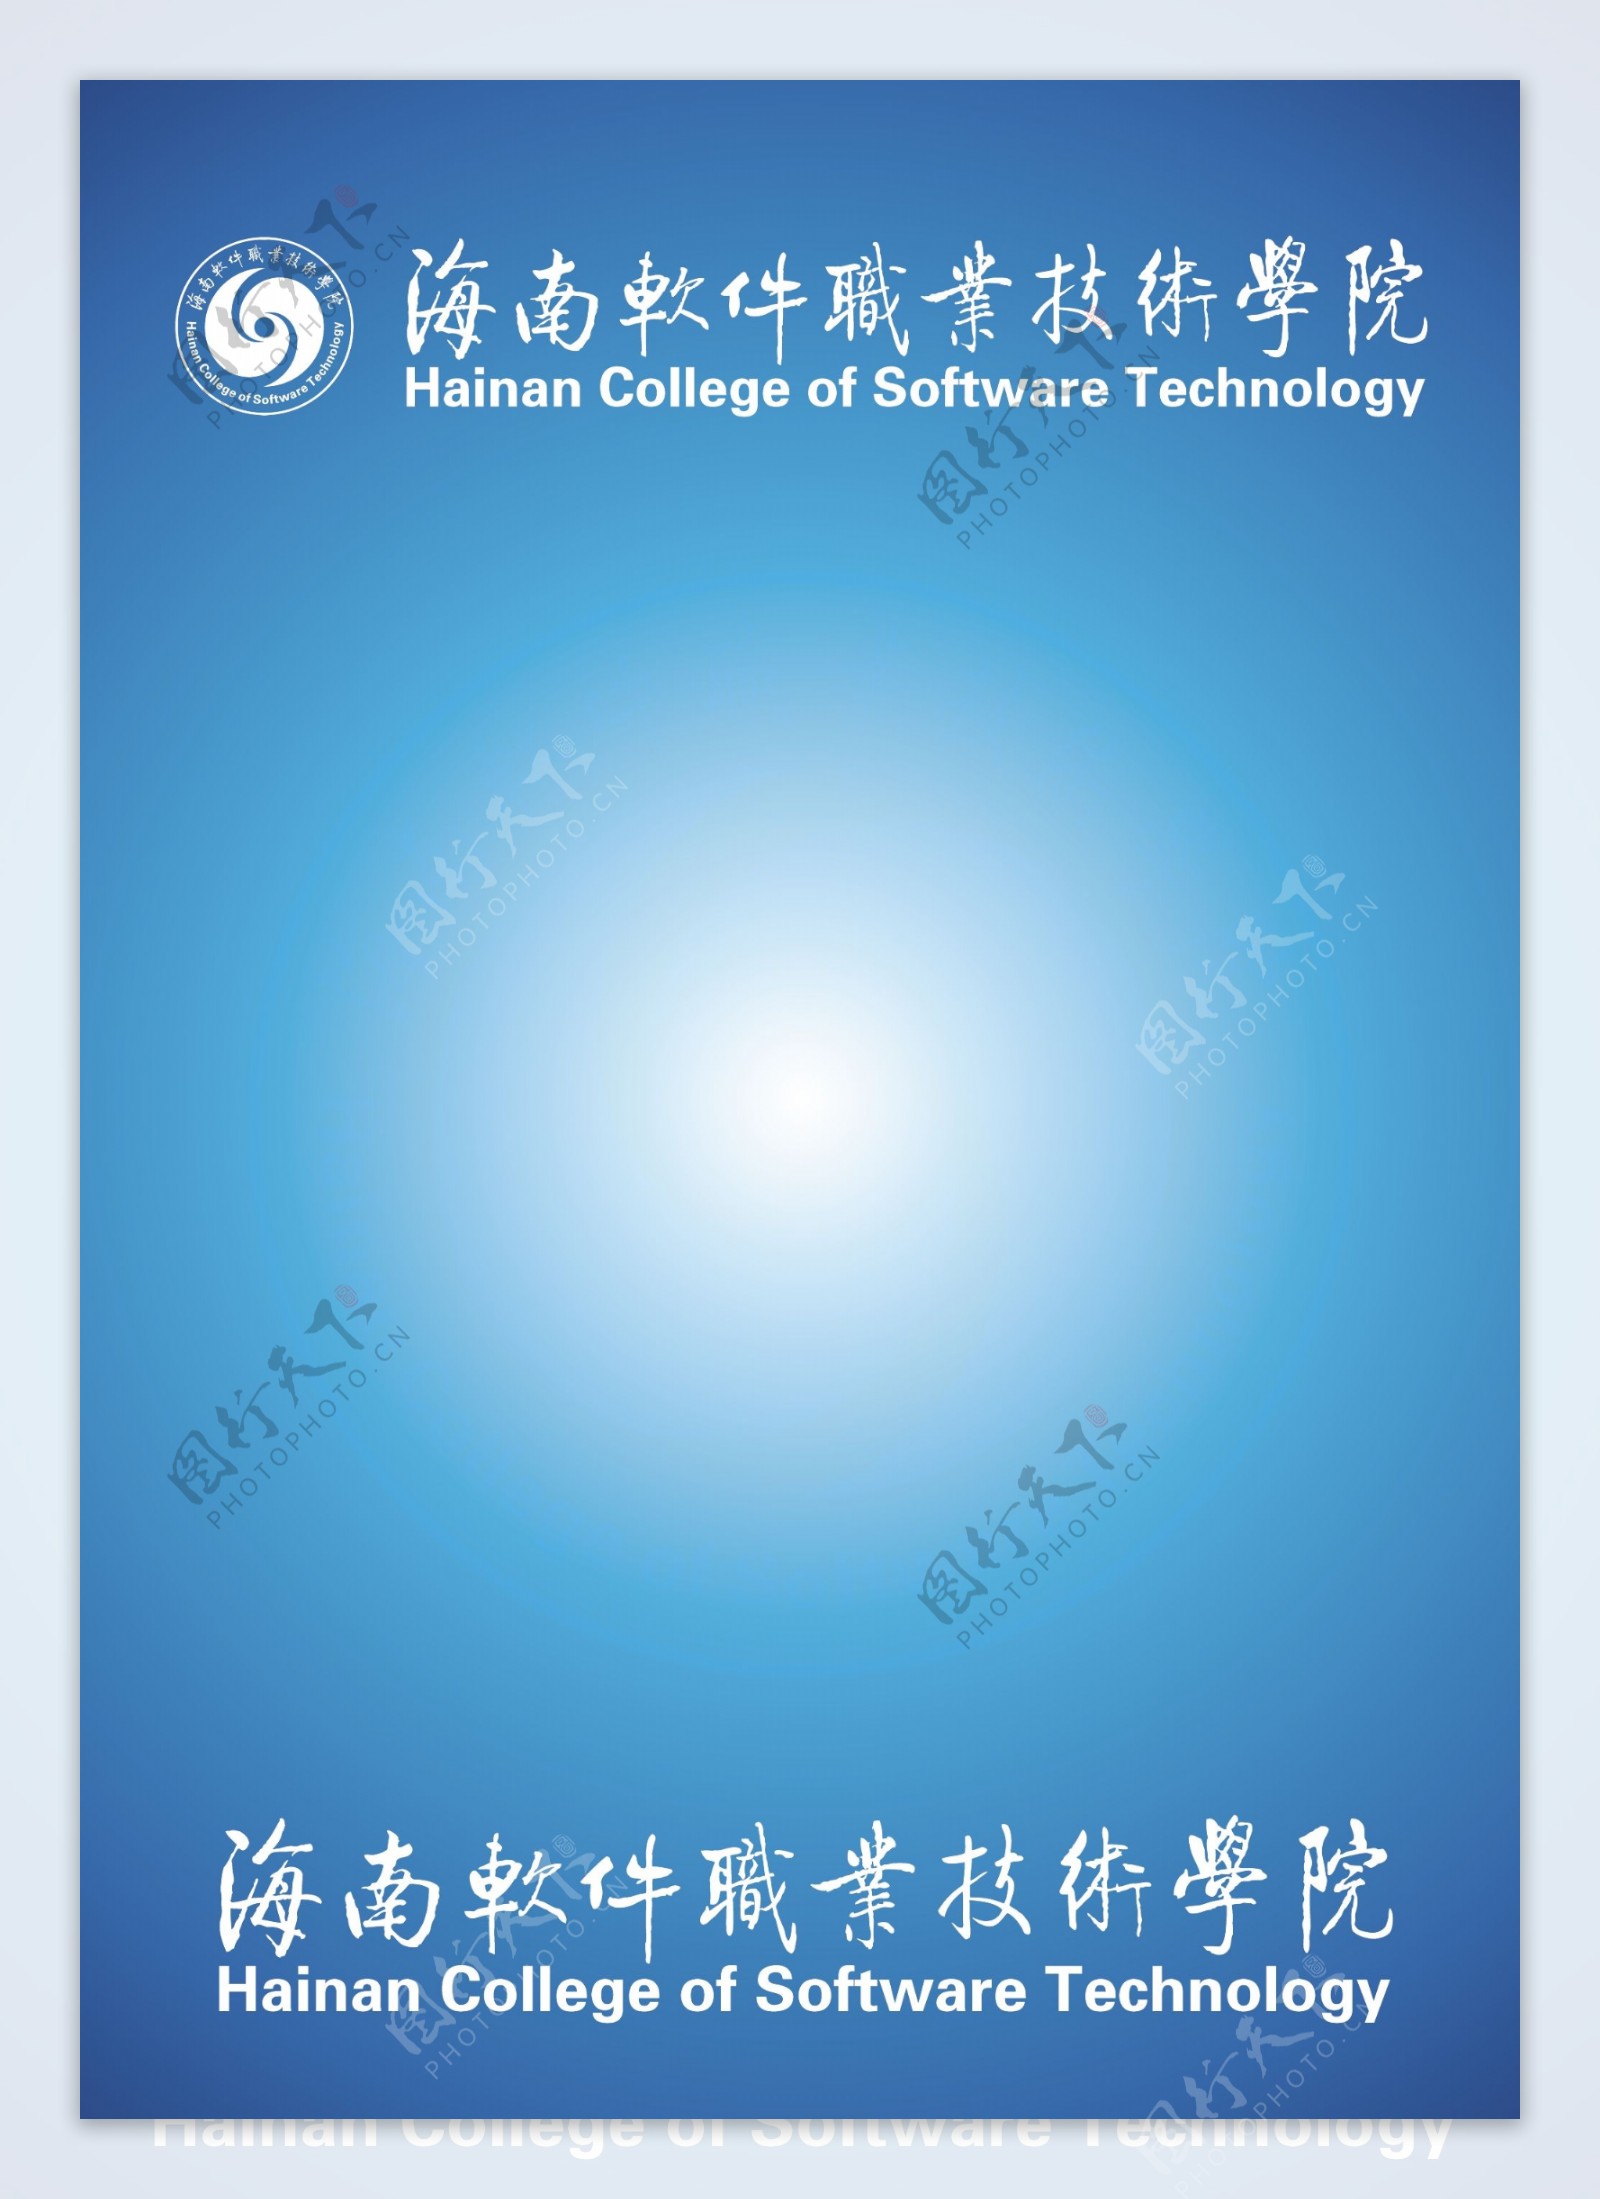 海南软件职业技术学院矢量标志图片